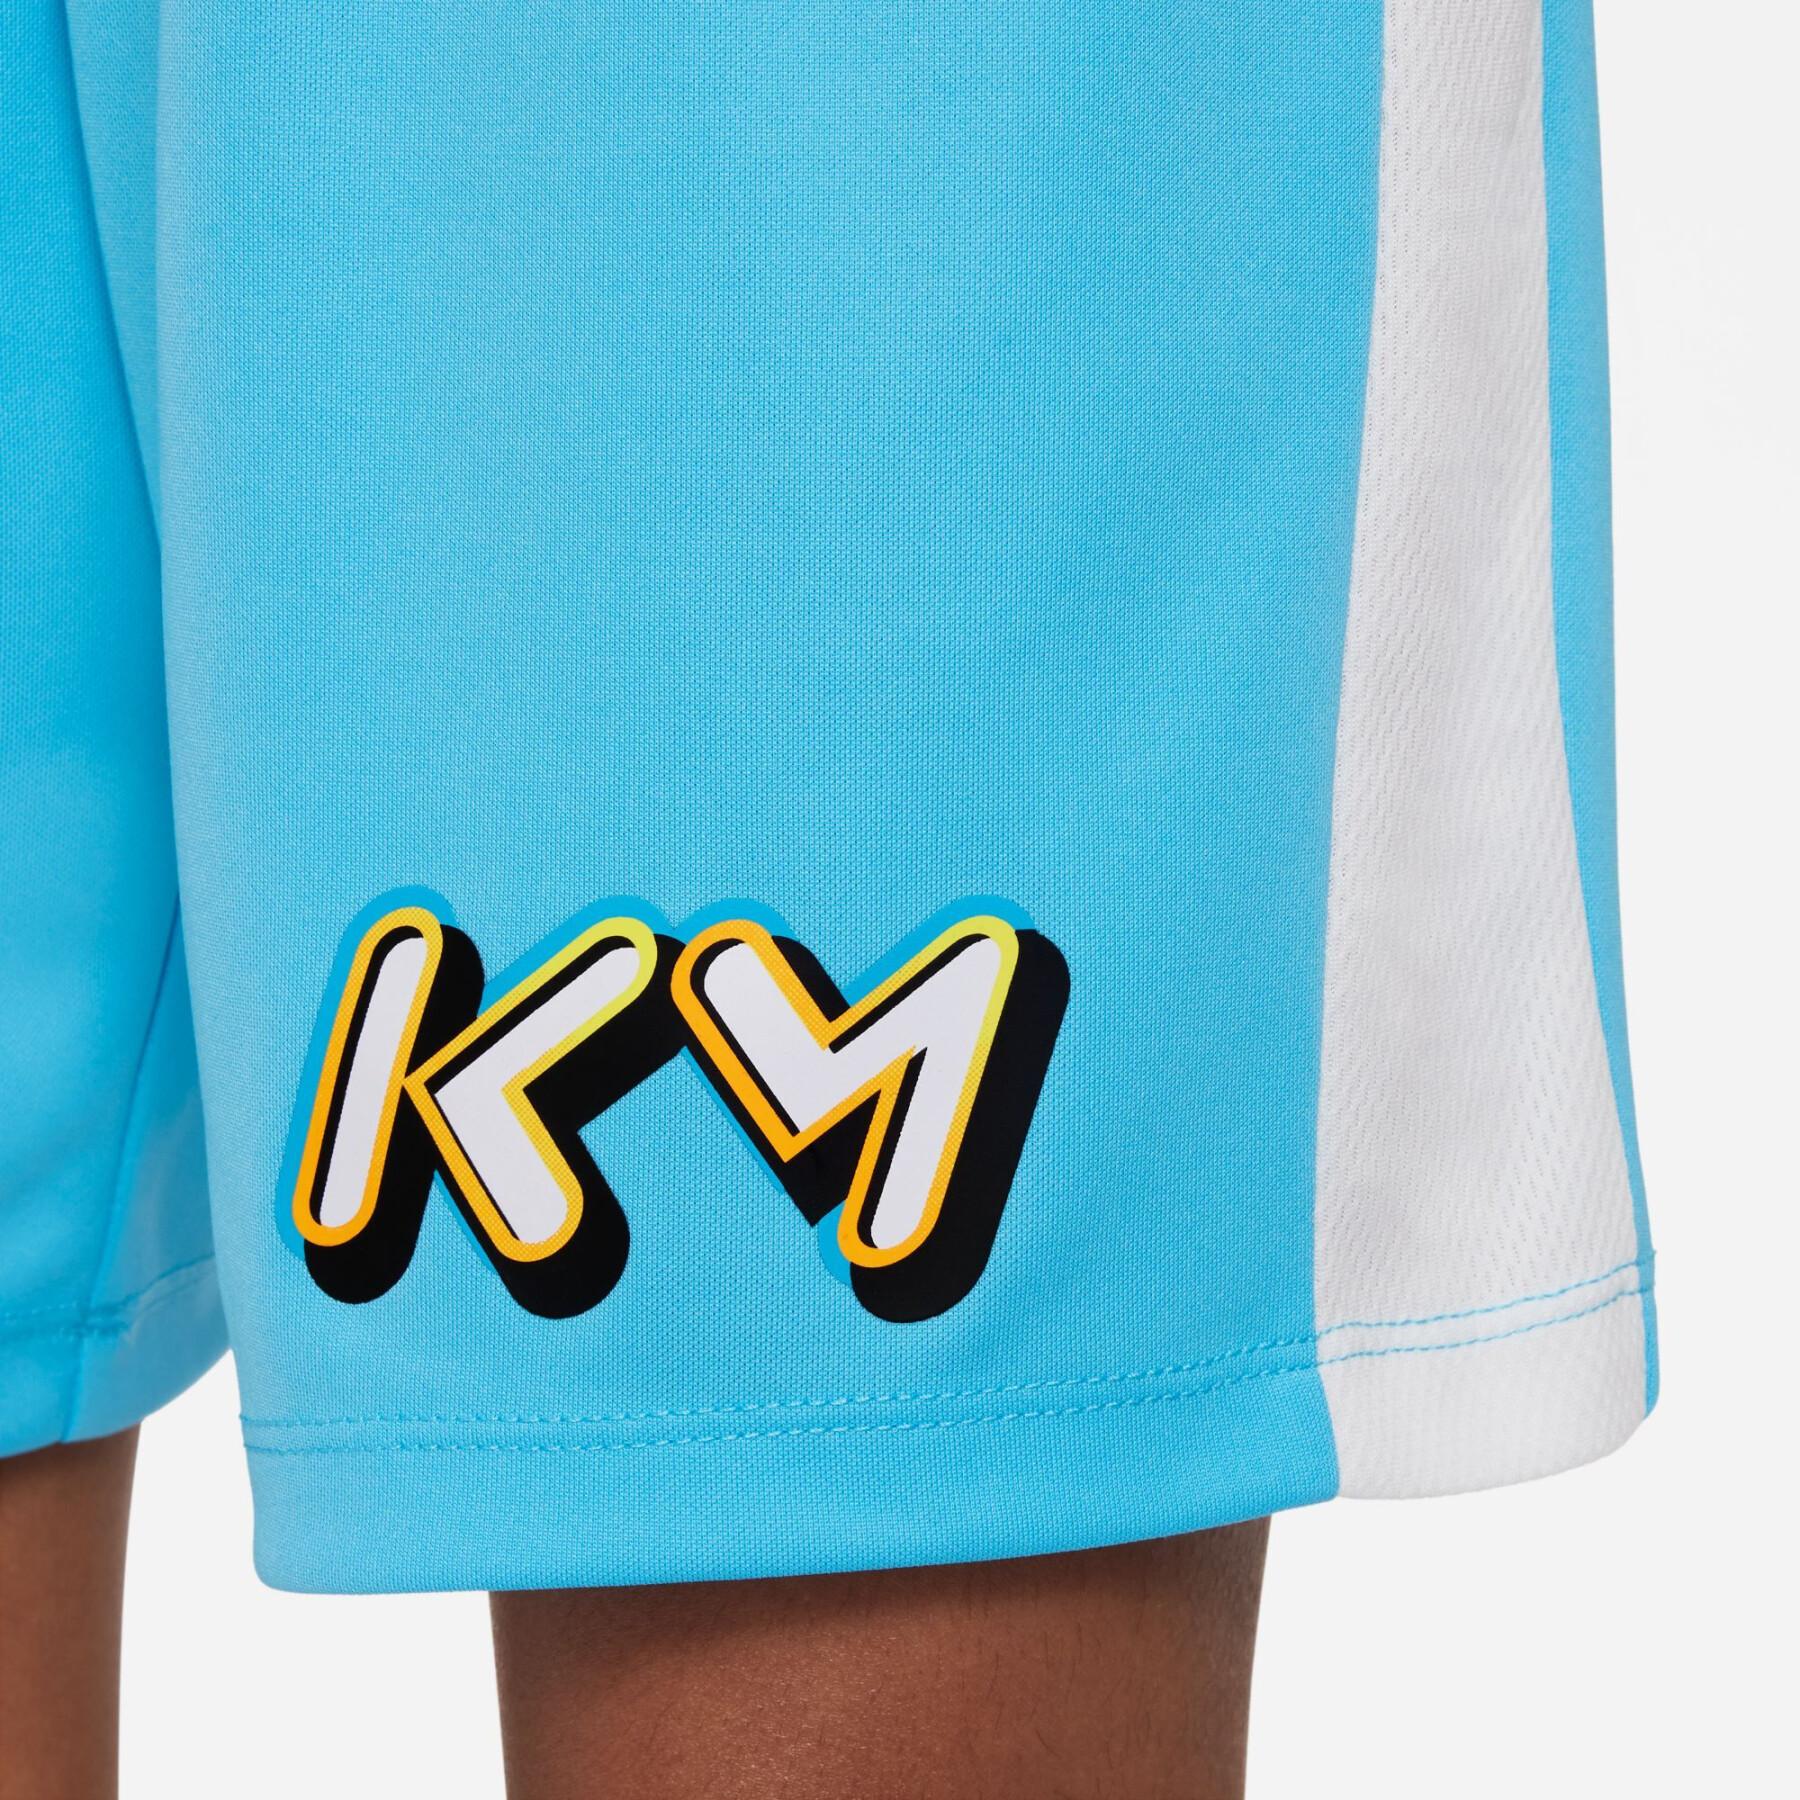 Pantaloncini per bambini Nike Kylian Mbappé